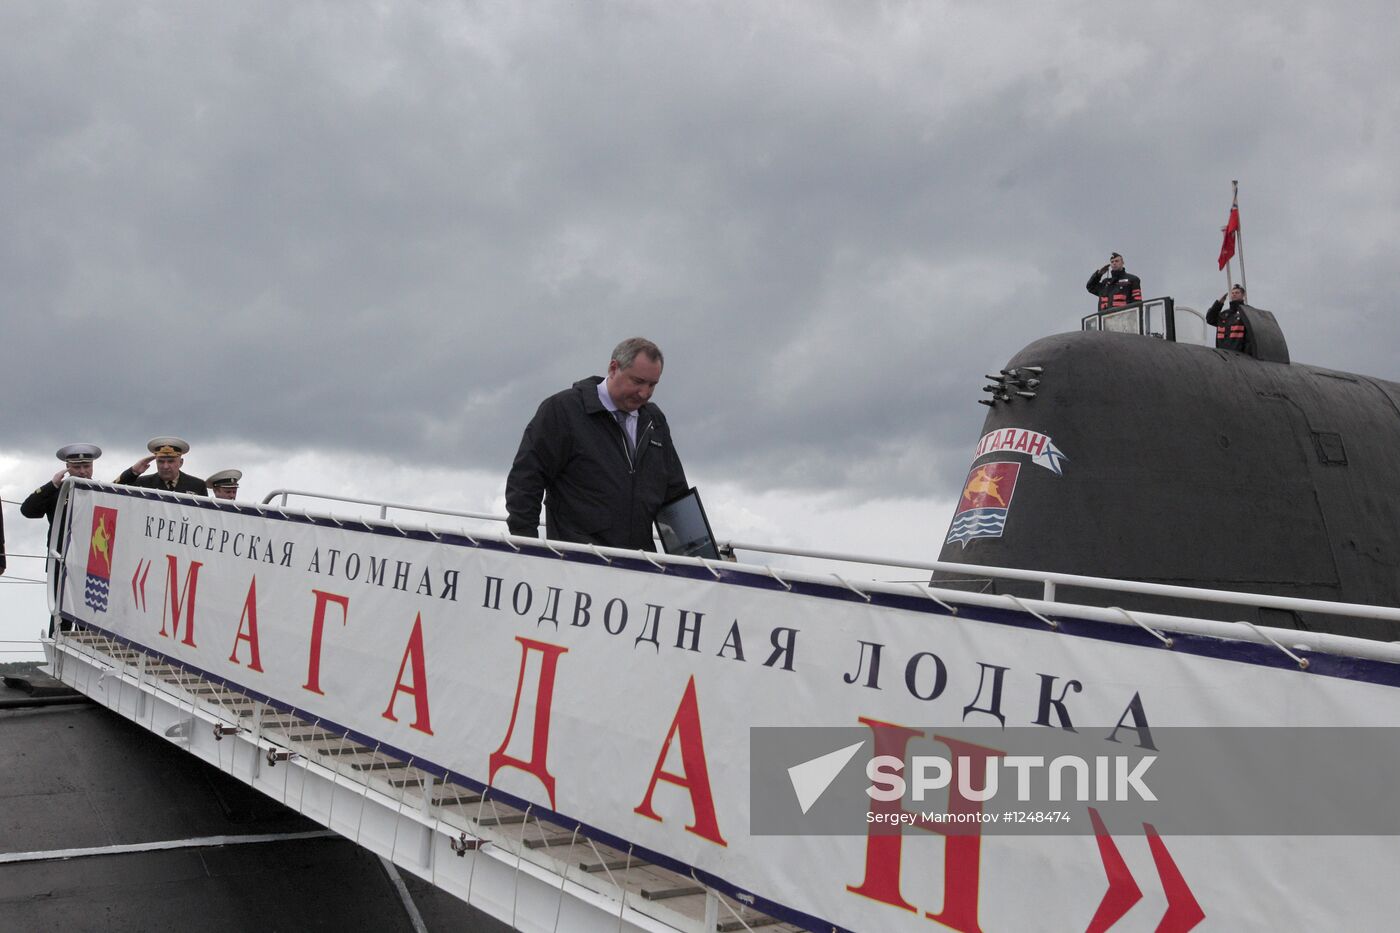 Dmitry Rogozin's working trip to Vladivostok